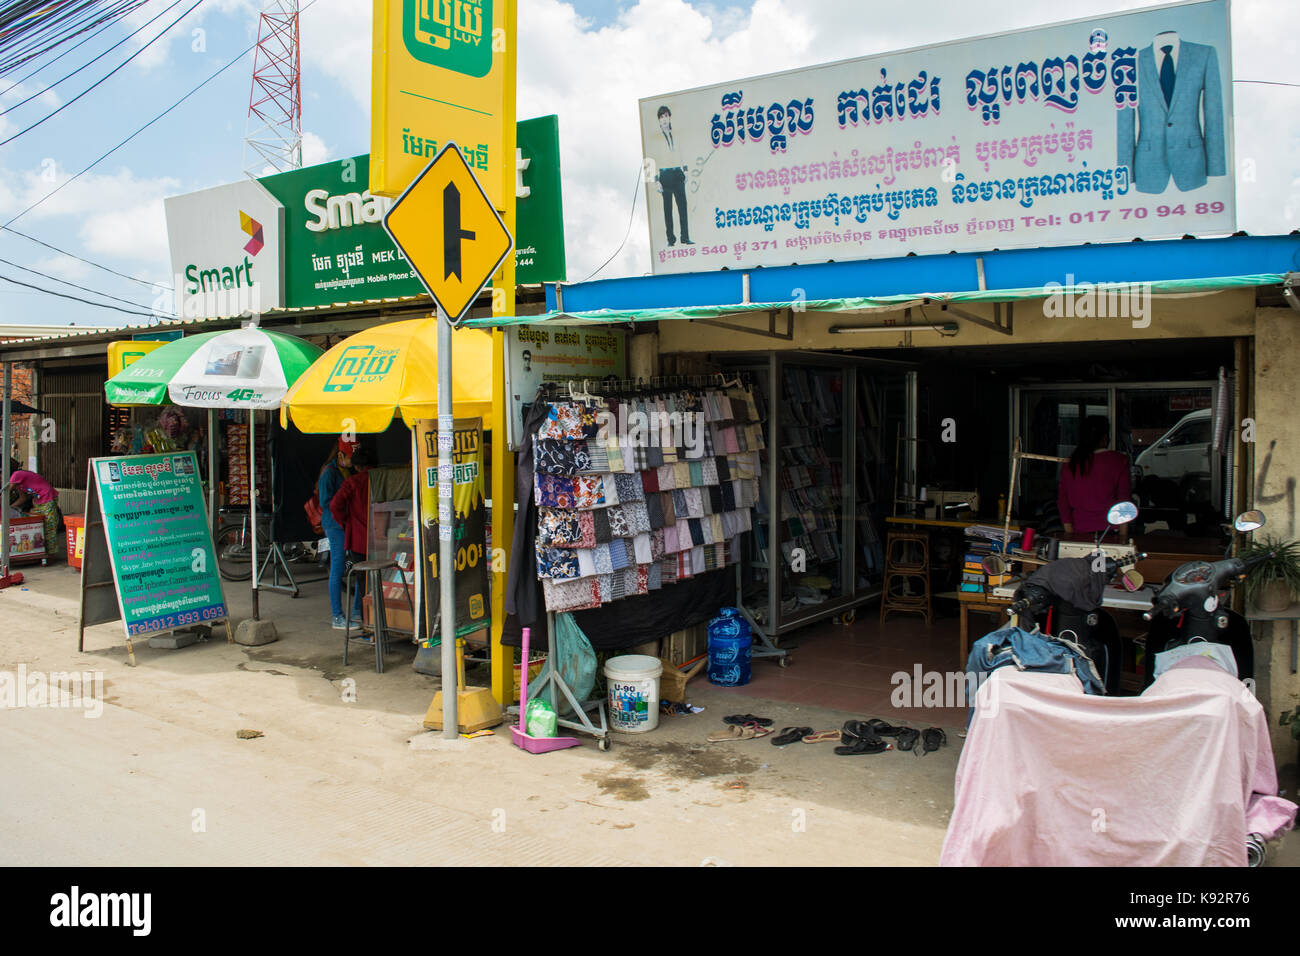 Ein Geschäft mit Textilien und Tuch, mit Proben mit verschiedenen Farben und Mustern auf Anzeige außen. In den Straßen von Phnom Penh, Kambodscha, Se Asien Stockfoto